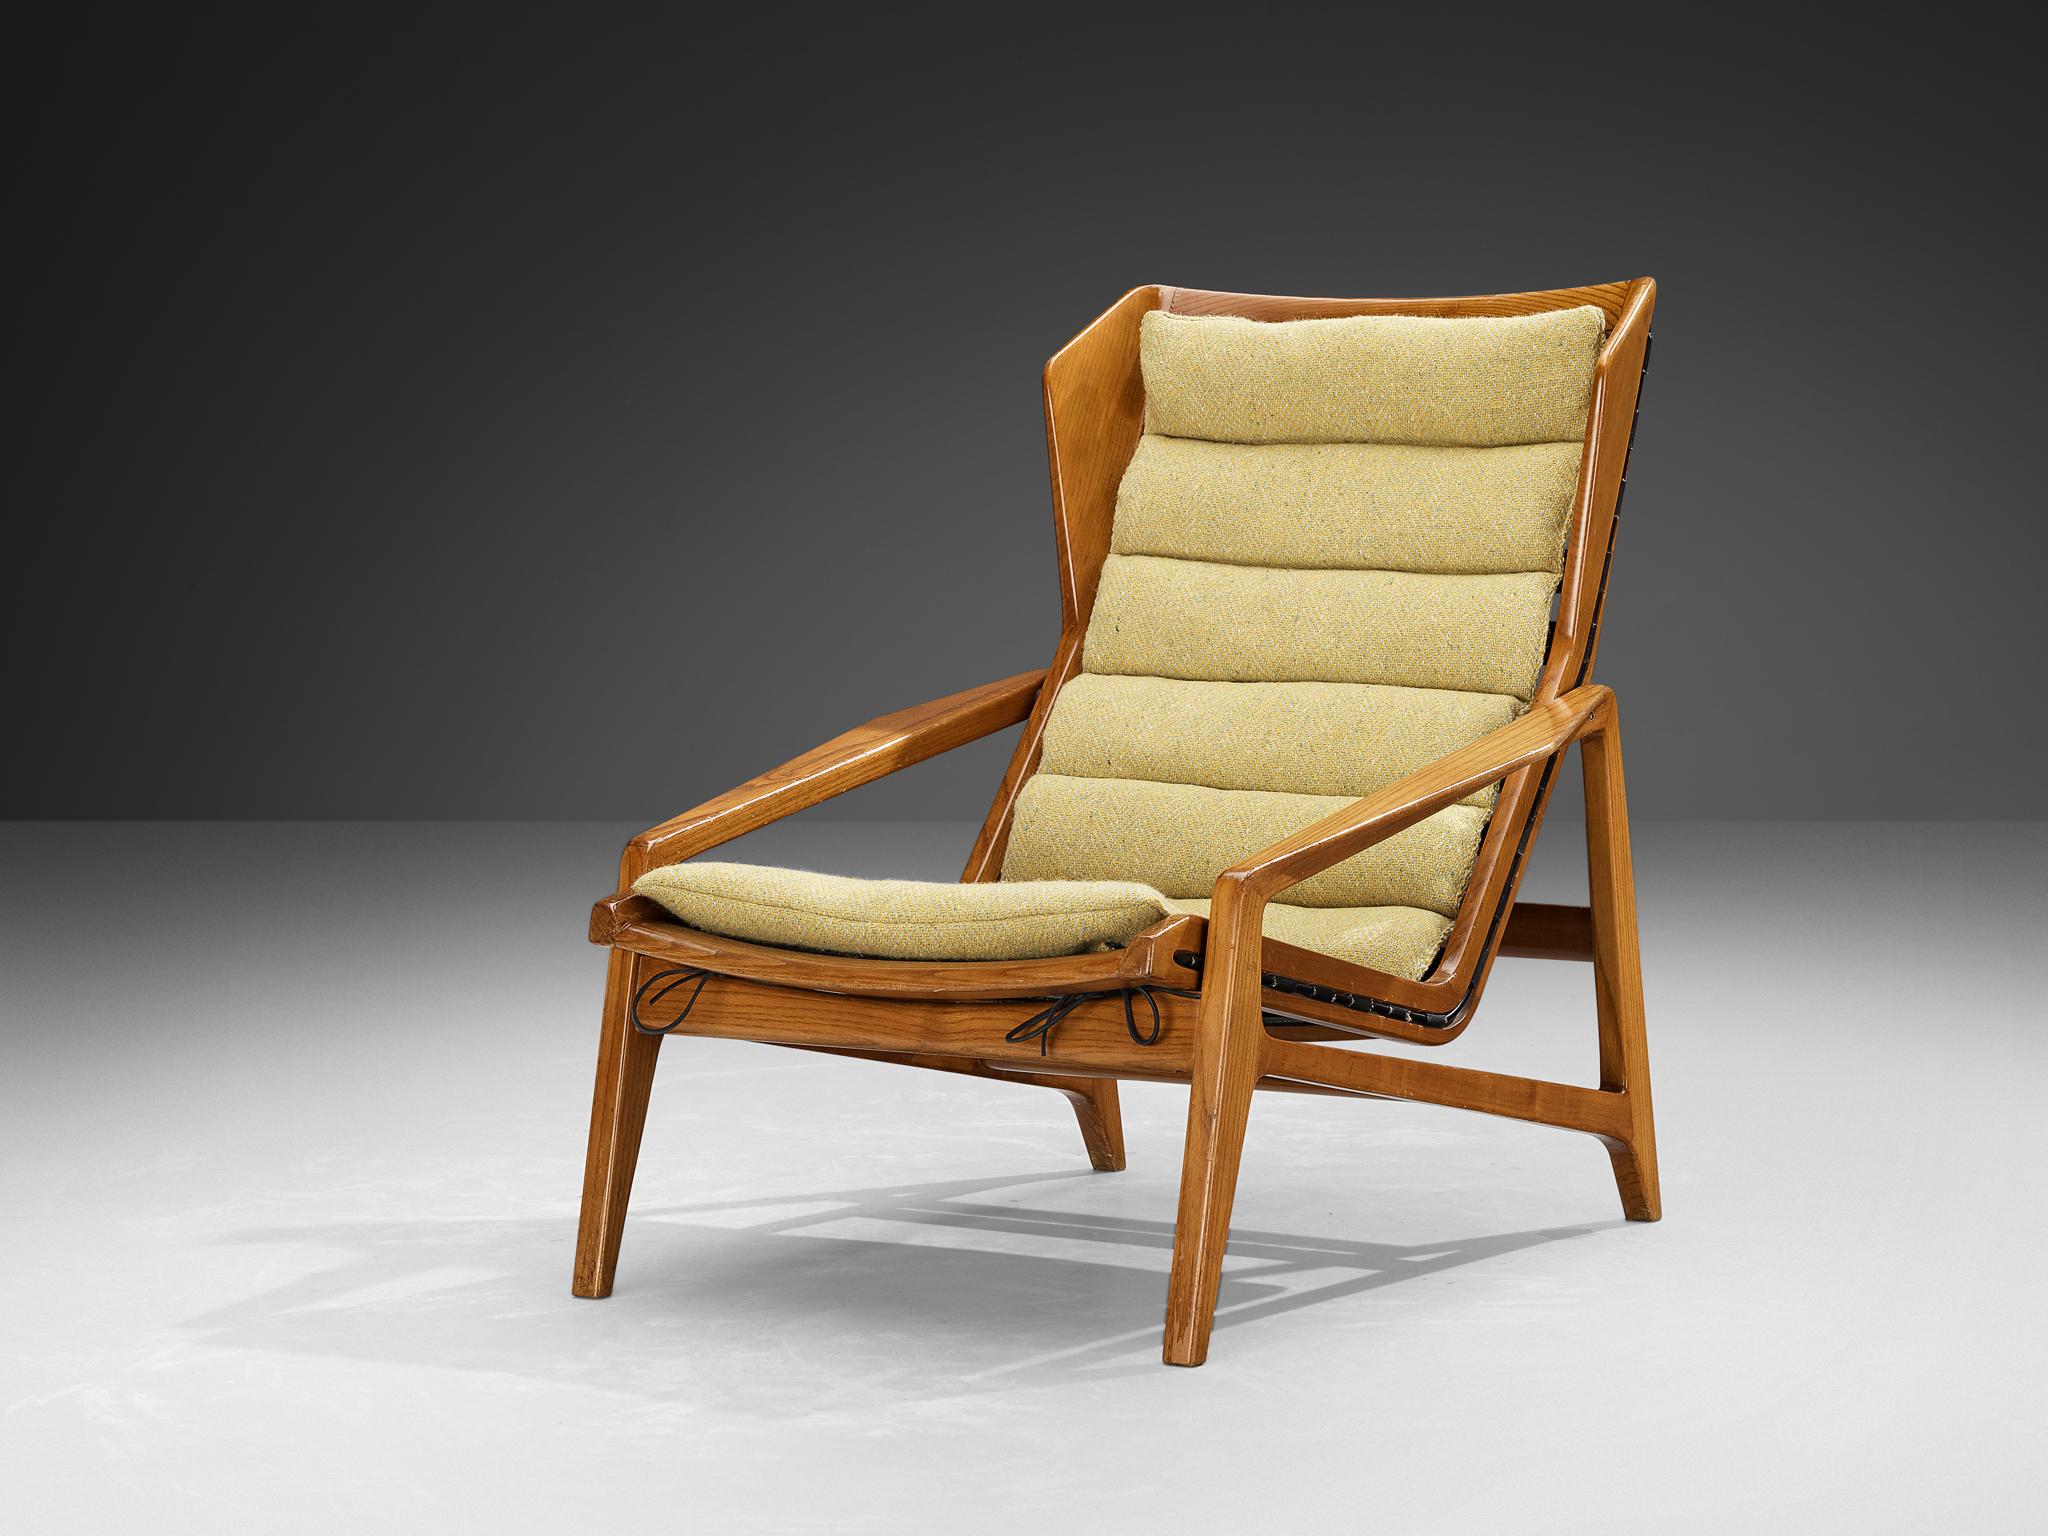 Gio Ponti pour Figli di Amadeo Cassina, chaise longue, modèle '811', châtaigne, tissu, caoutchouc, métal enduit, Italie, design 1957

Fabriquée en 1957, cette rare chaise longue modèle '811' est conçue par Gio Ponti pour Figli di Amadeo Cassina. Ce